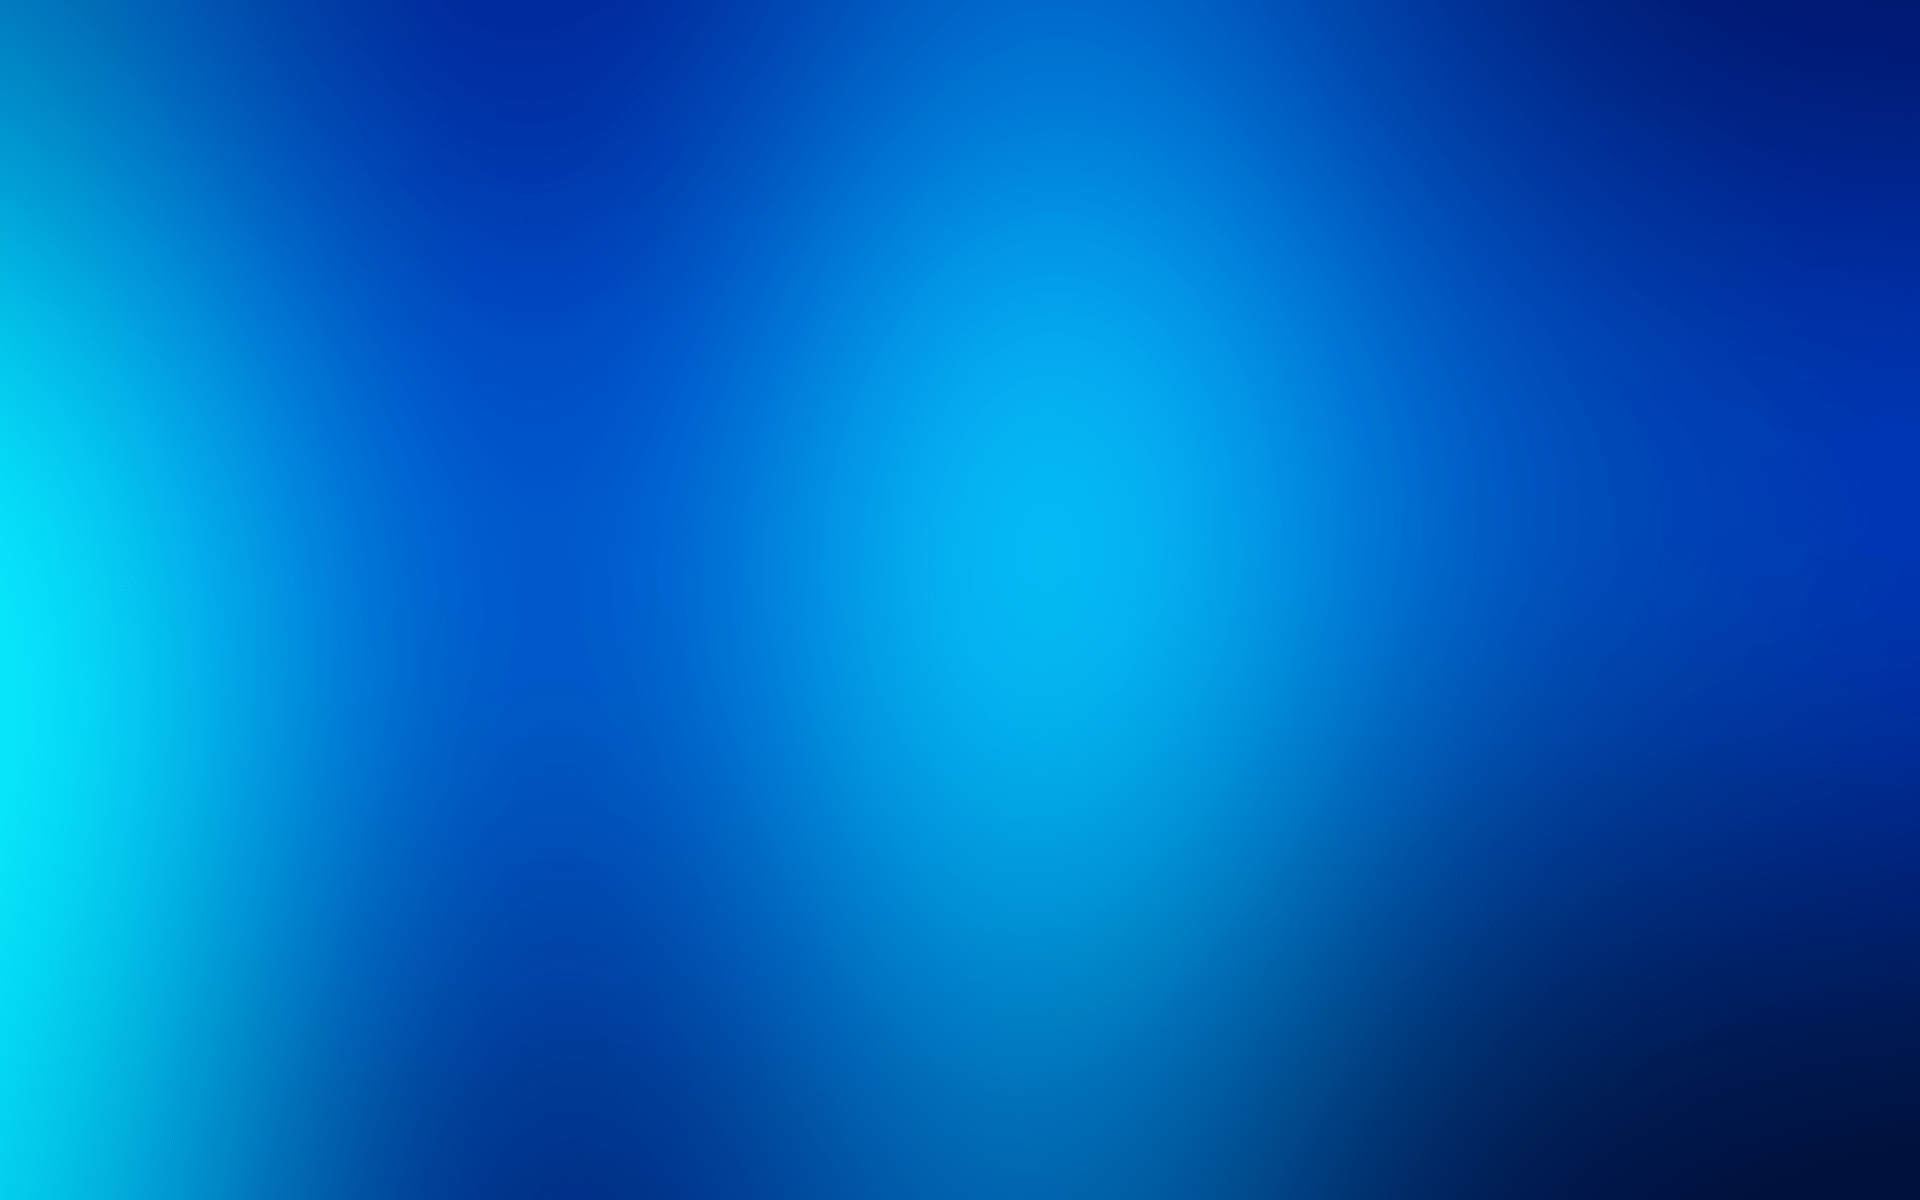 Hình nền gradient màu xanh đẹp: Hình nền gradient màu xanh đẹp sẽ khiến cho không gian làm việc của bạn trở nên phong phú, tươi mới và đầy sức sống. Với màu sắc rực rỡ và ấn tượng, hình ảnh này sẽ chắc chắn là điểm nhấn của màn hình máy tính bạn.